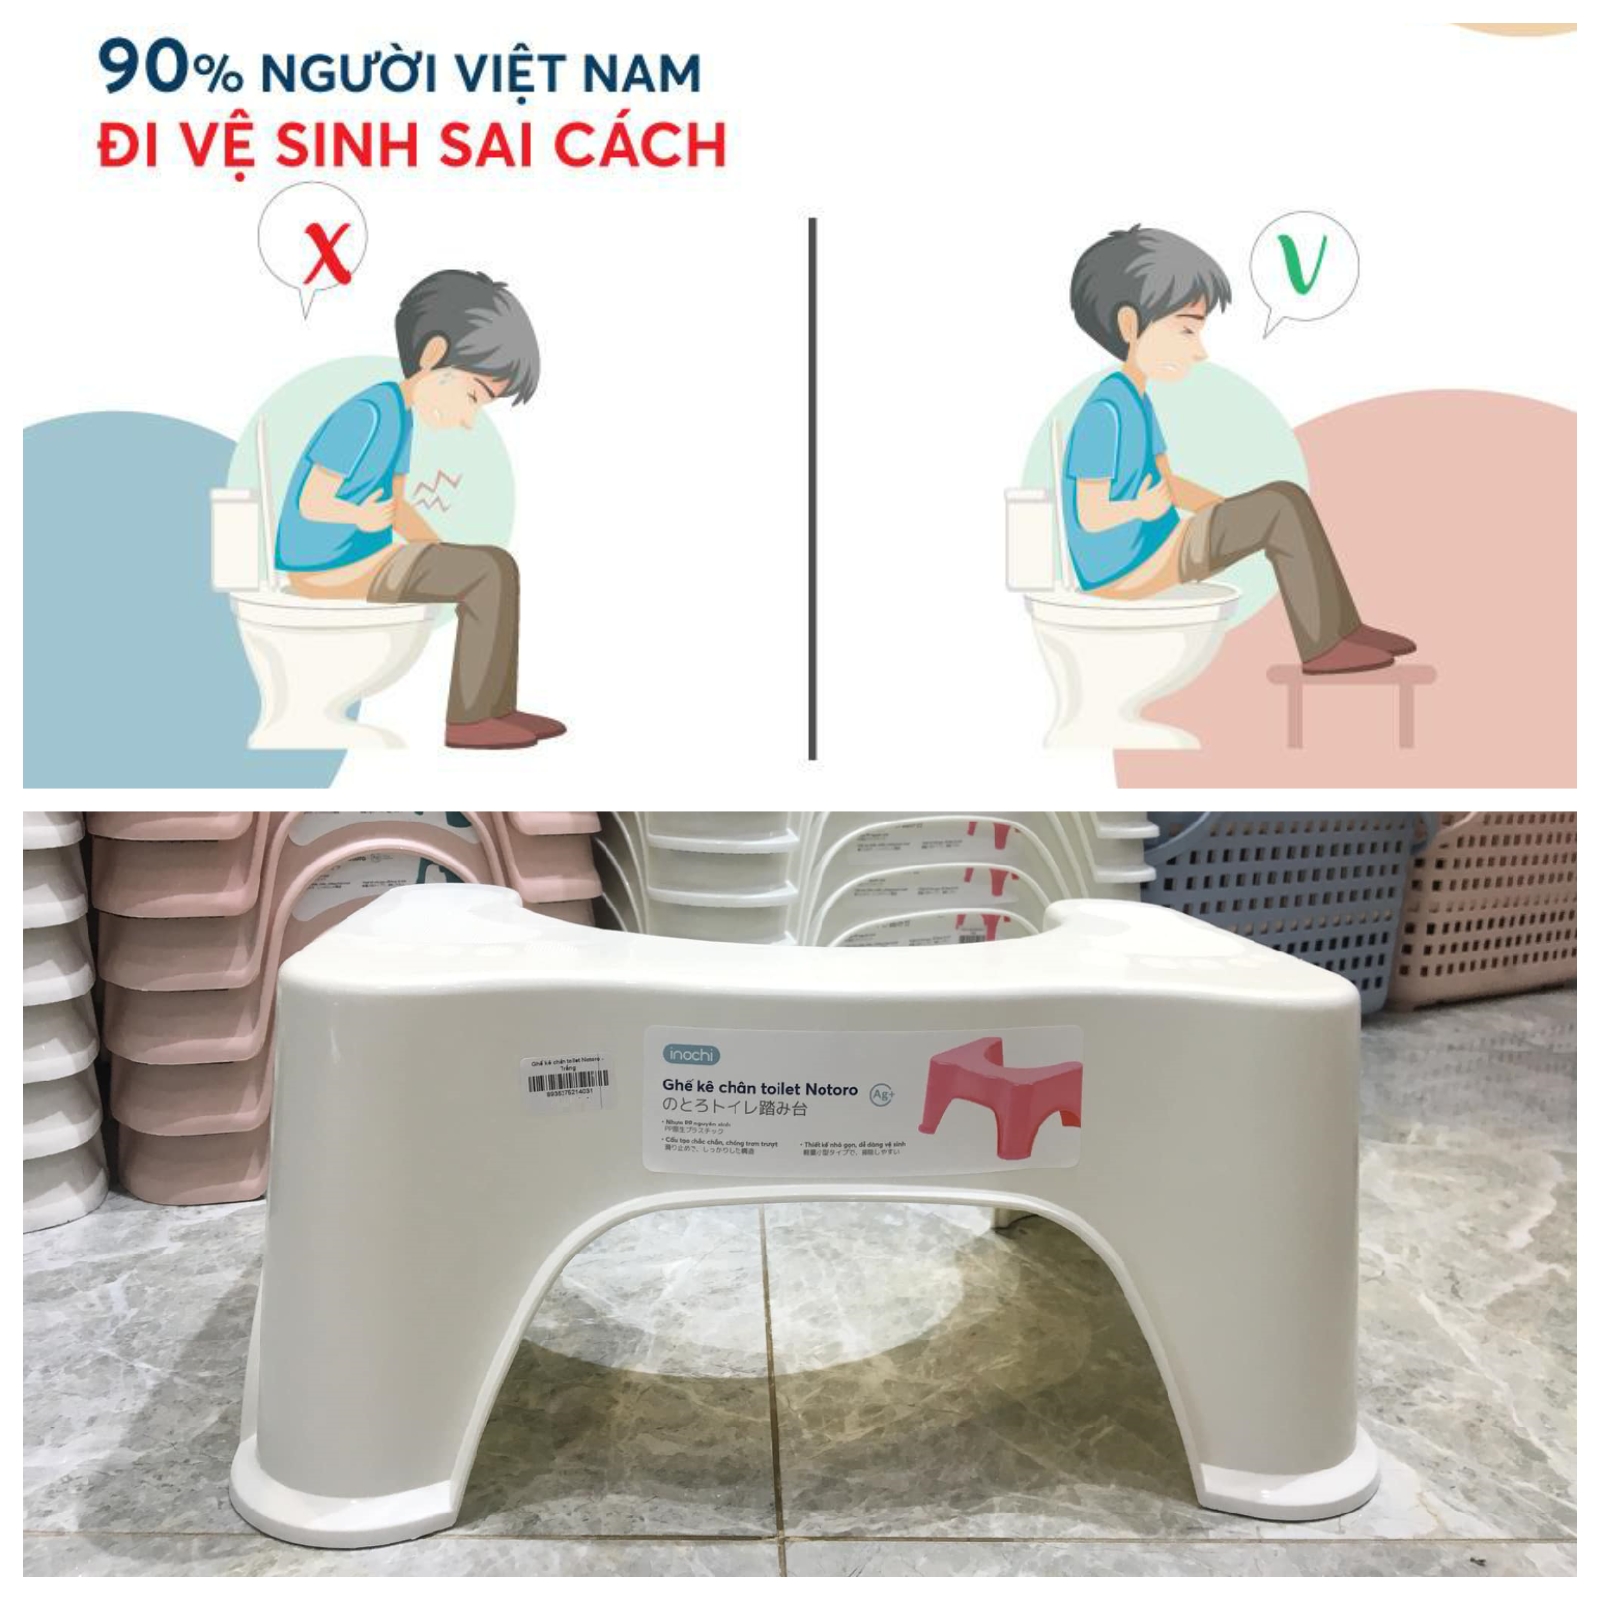 Hình ảnh Ghế kê chân toilet Inochi Notoro (hỗ trợ đề phòng và điều trị các bệnh liên quan đến táo bón, đau bụng, hoặc khó đi vệ sinh)